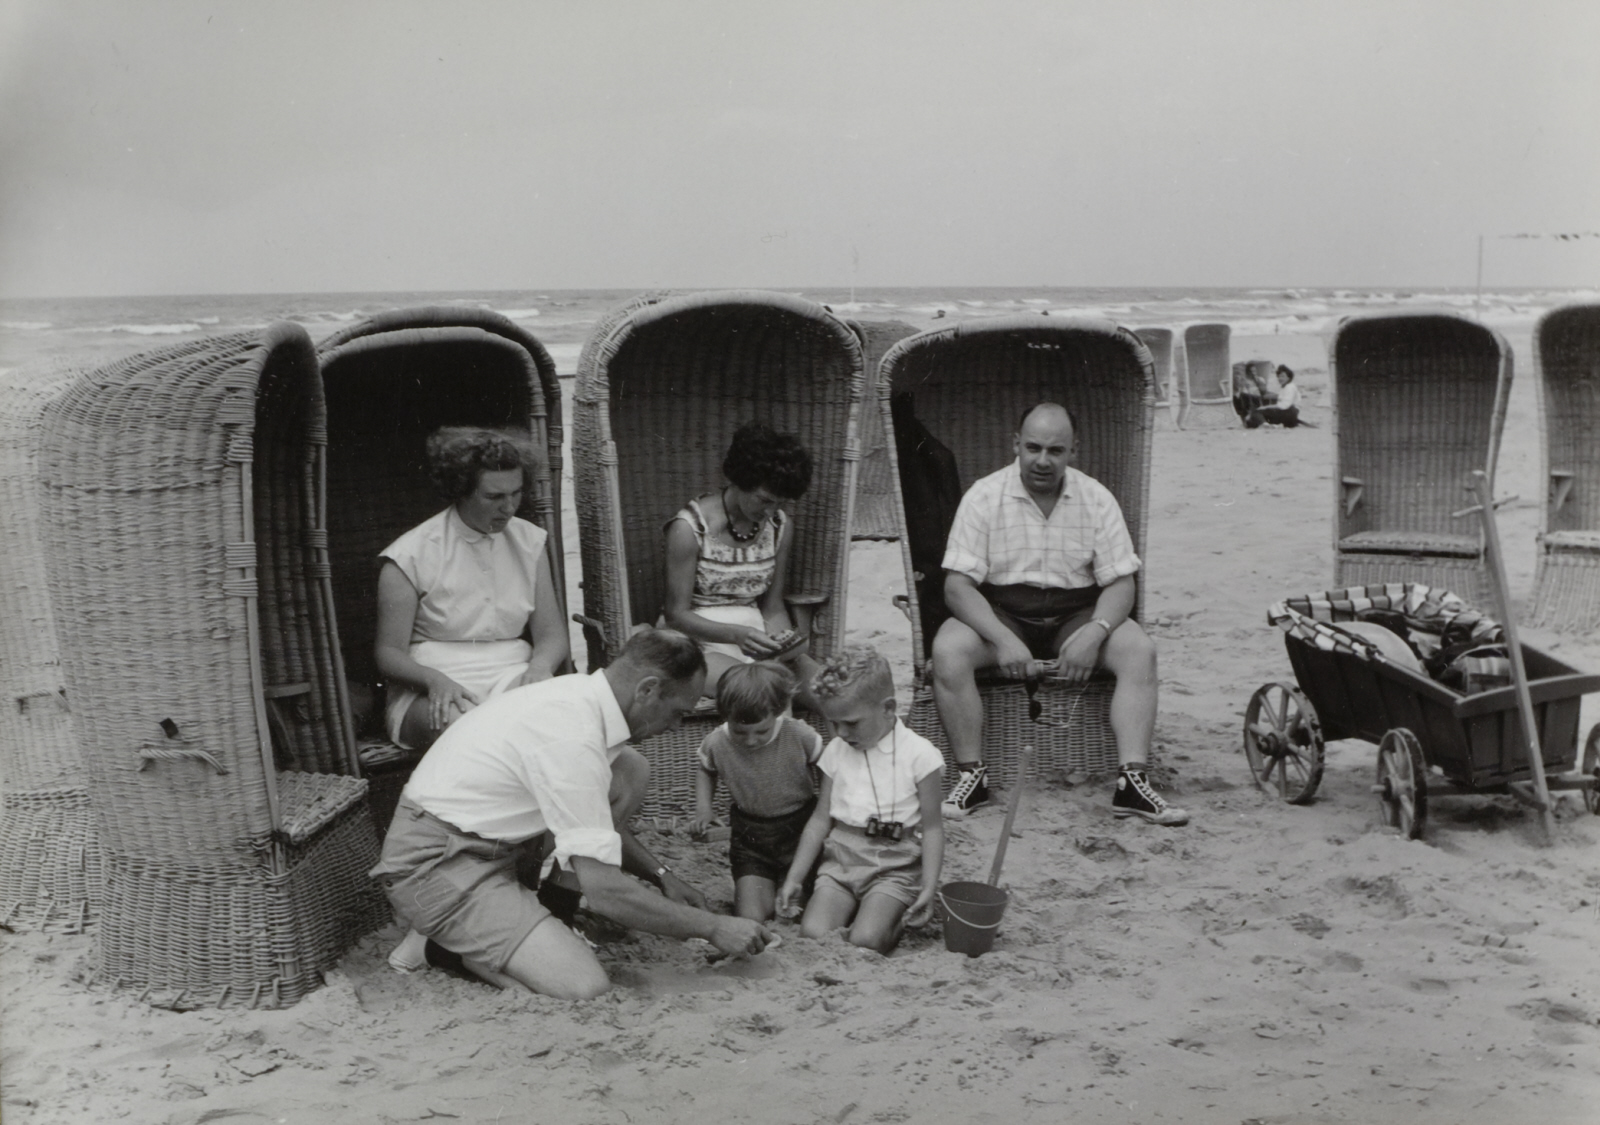 Recreanten aan de kust in strandstoelen in Wijk aan Zee